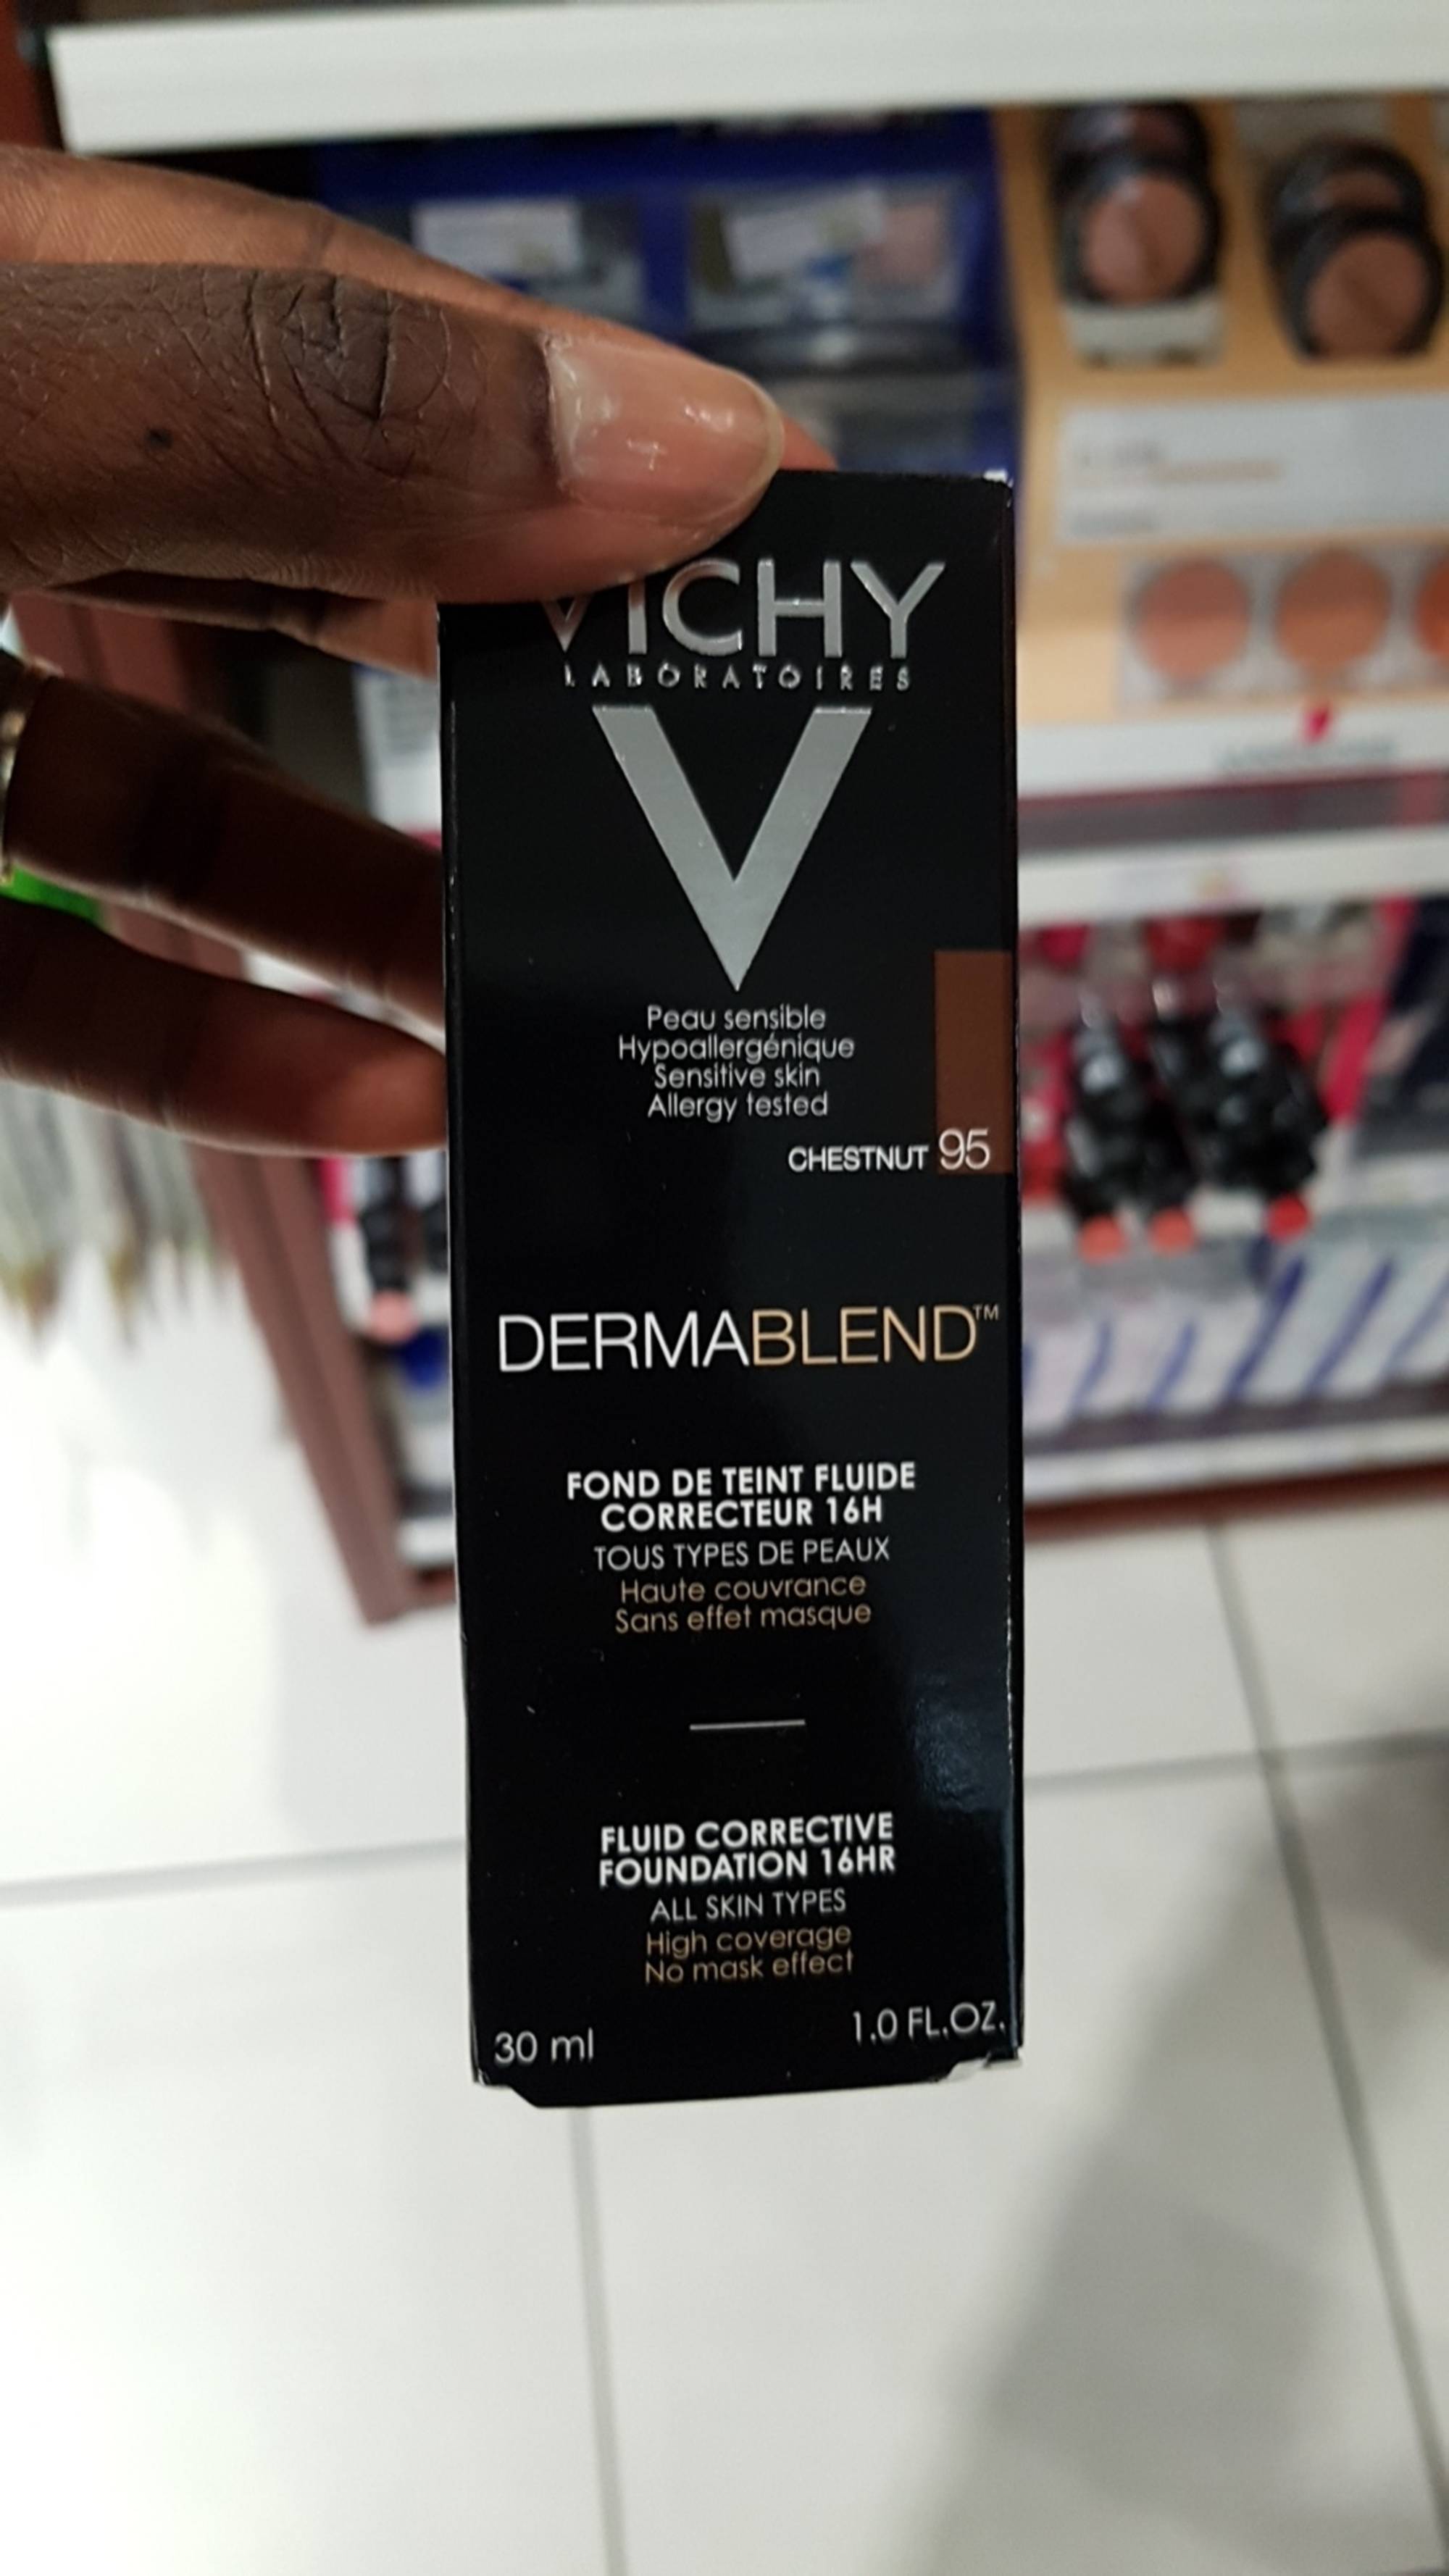 VICHY - Dermablend - Fond de teint fluide correcteur 16h